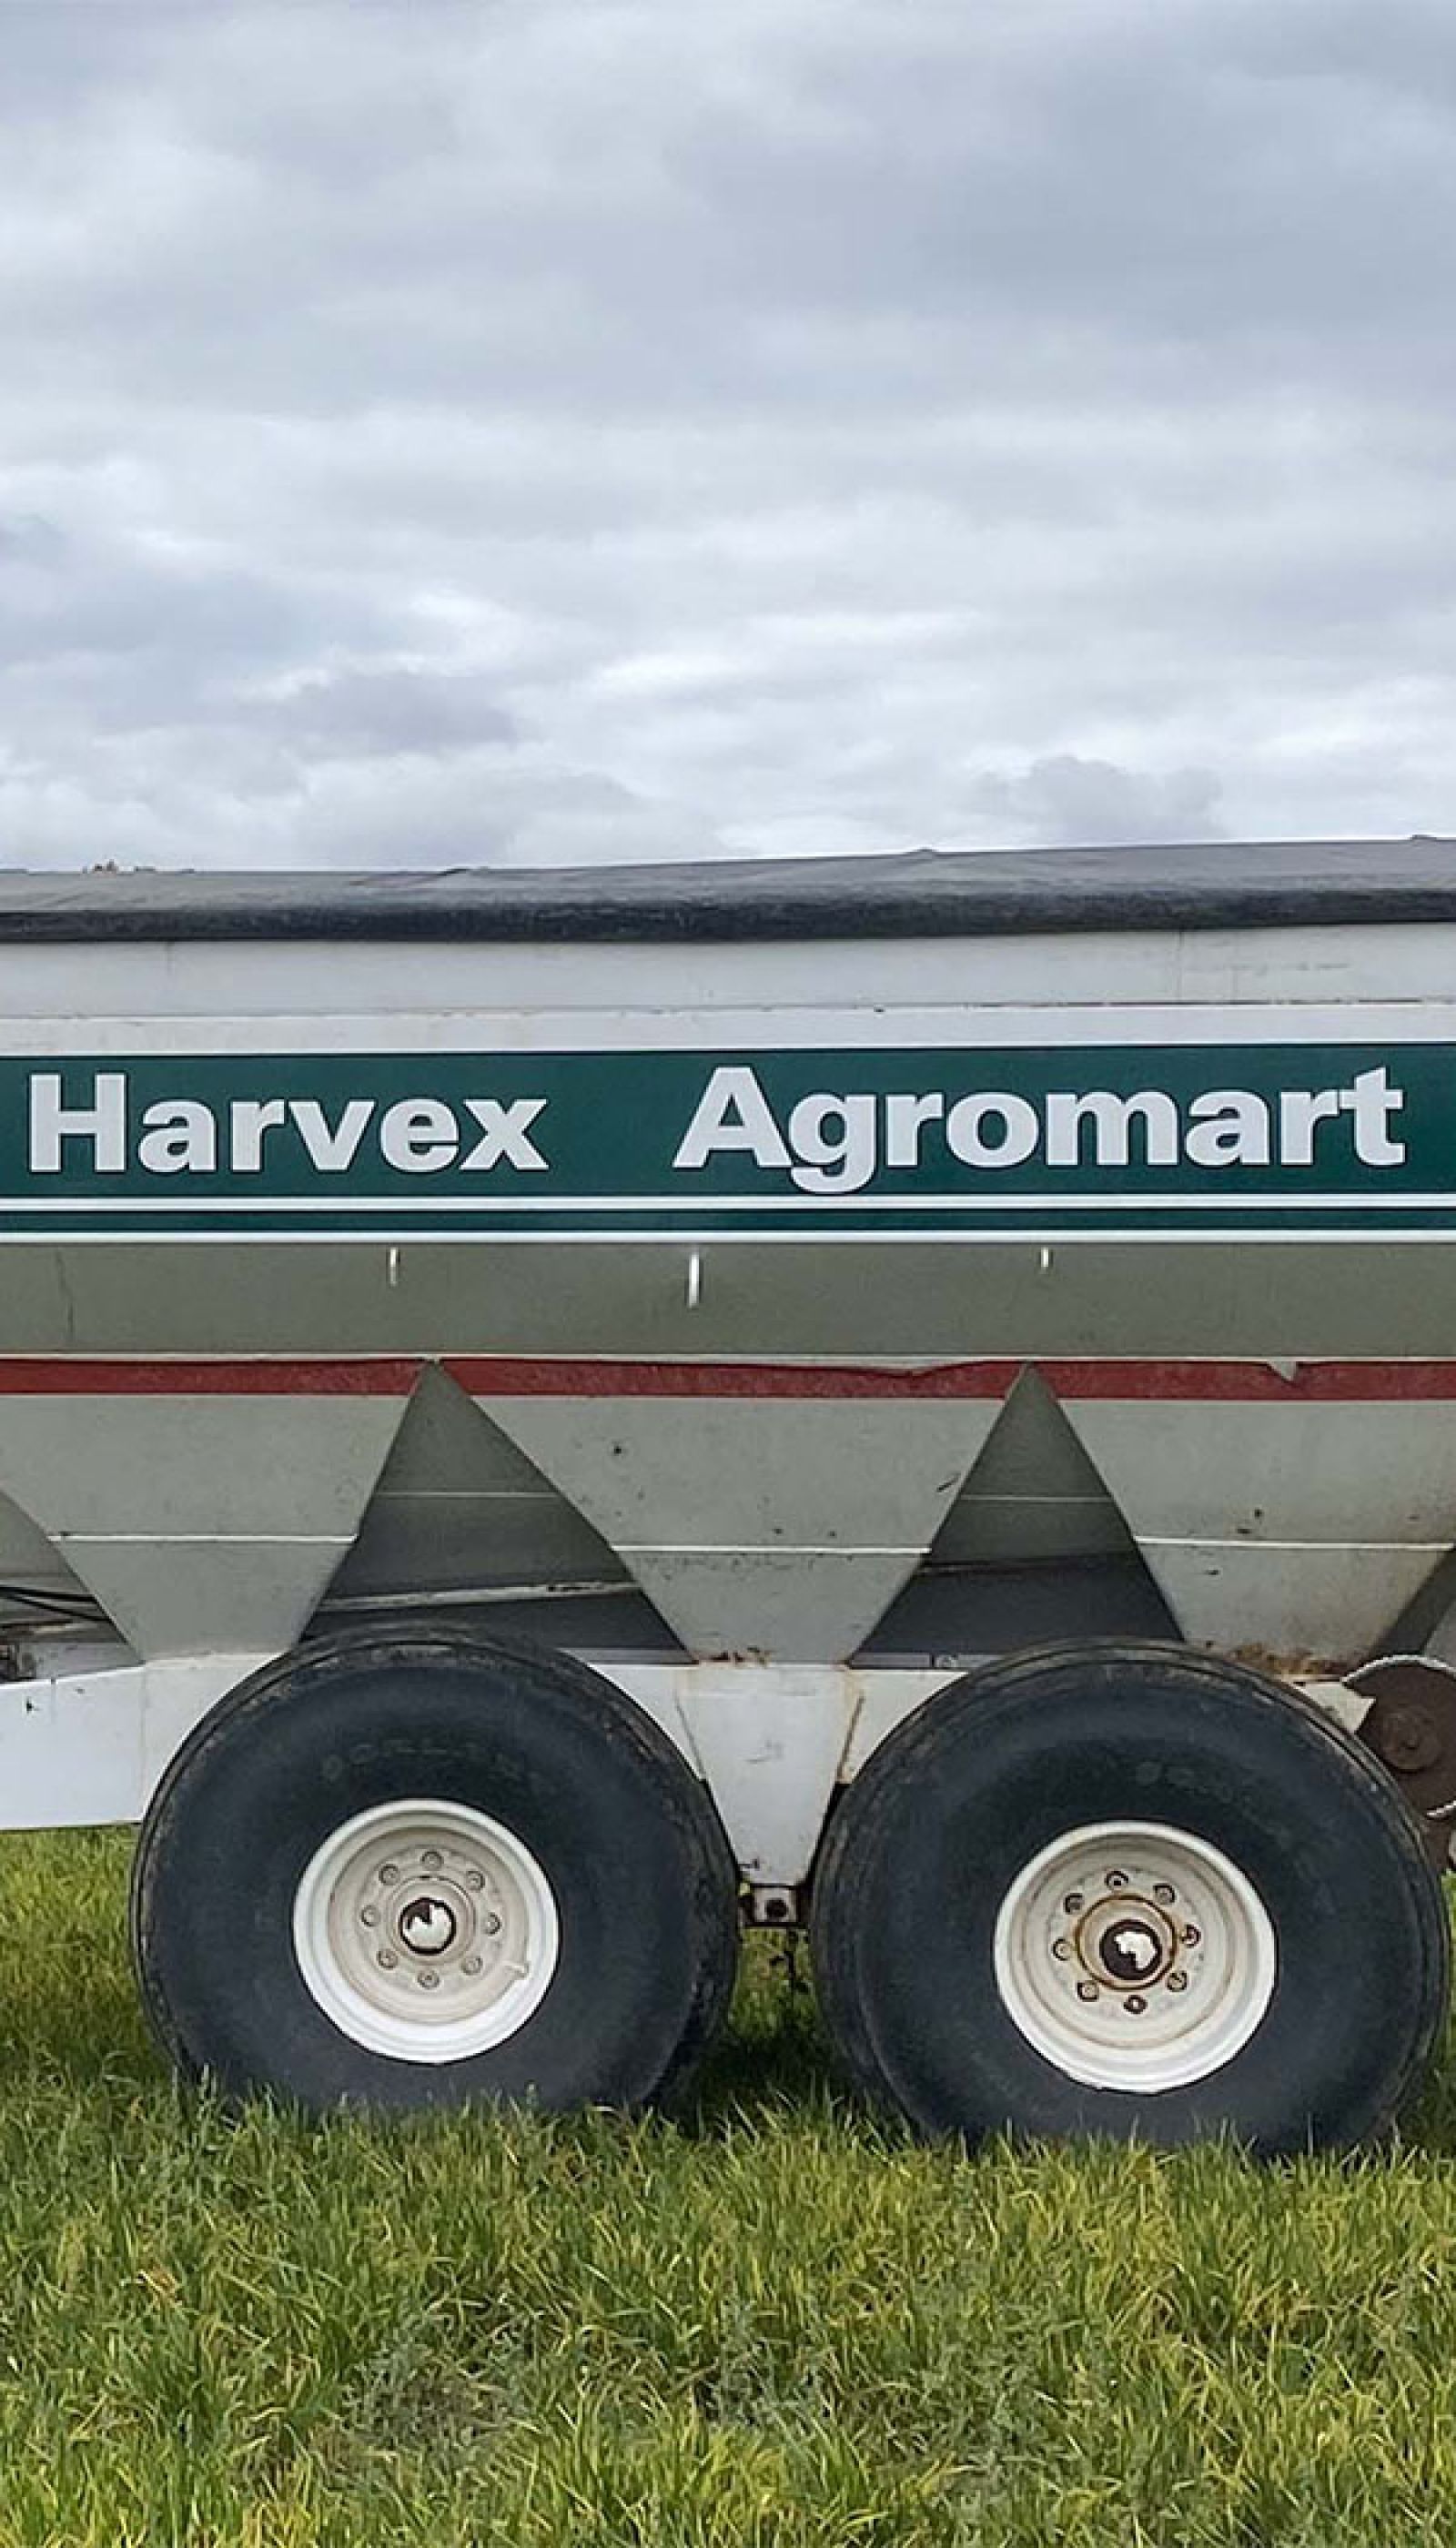 Harvex trailer sitting on cropland